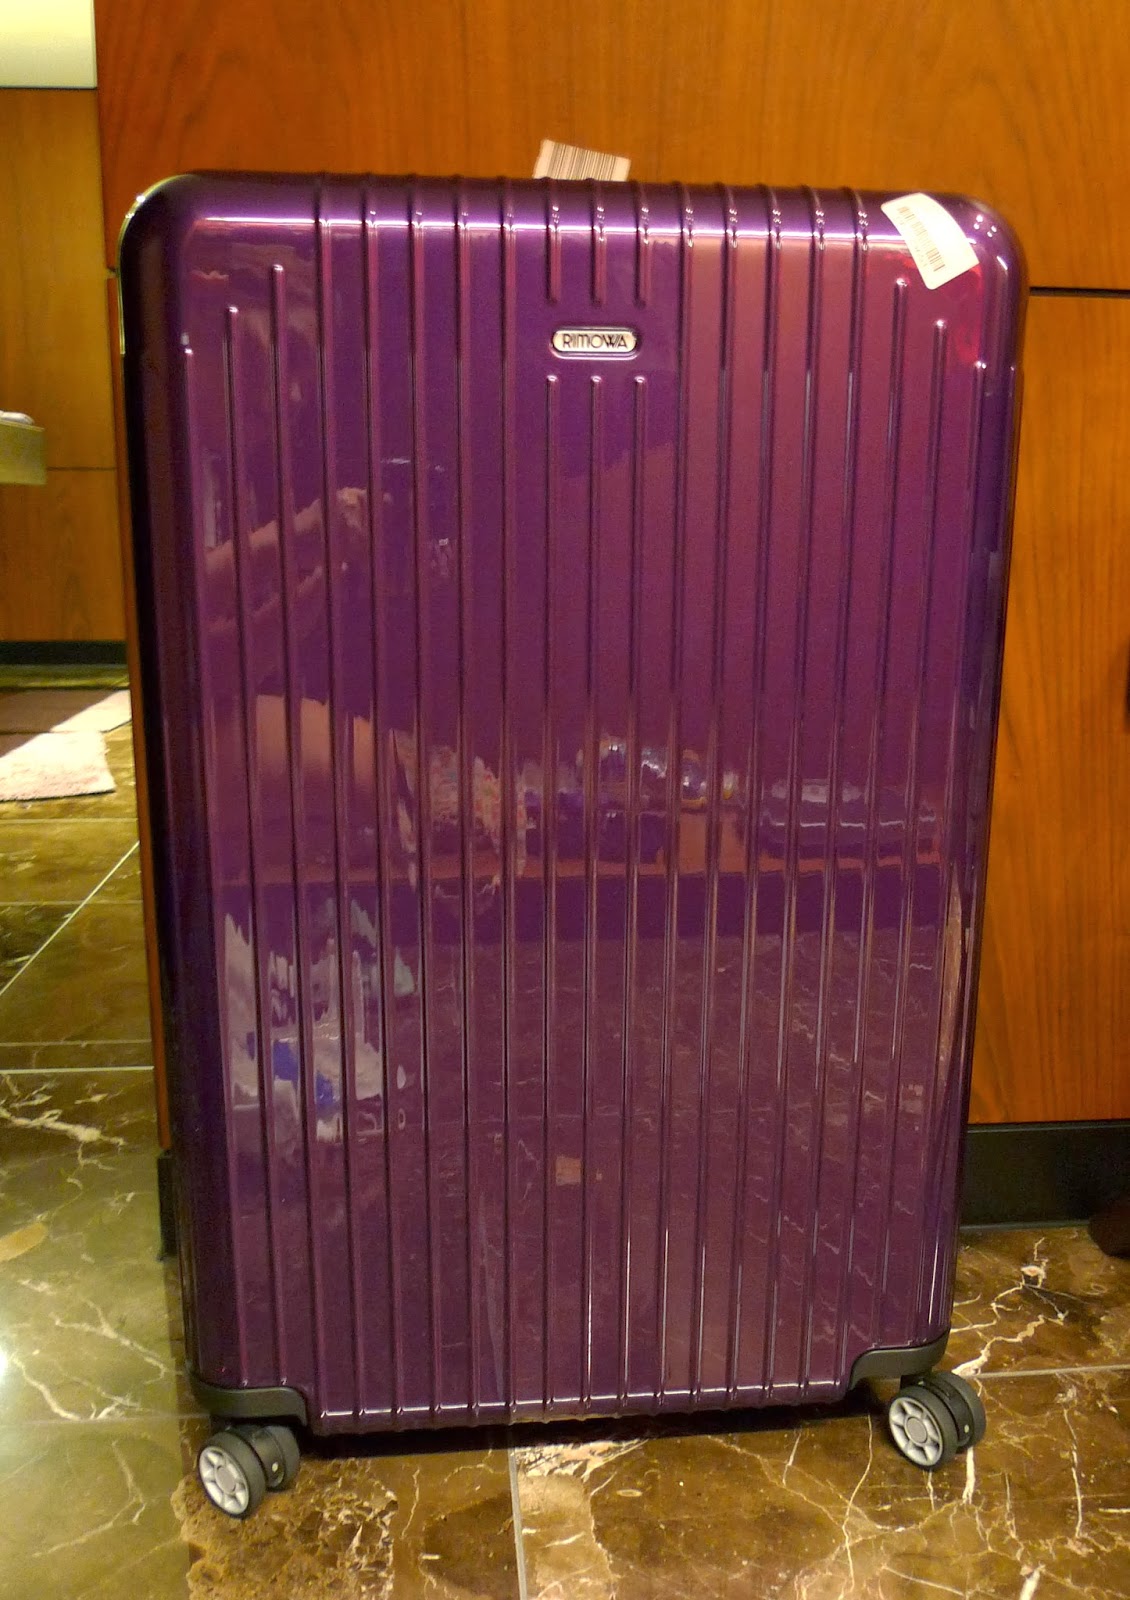 rimowa luggage size comparison